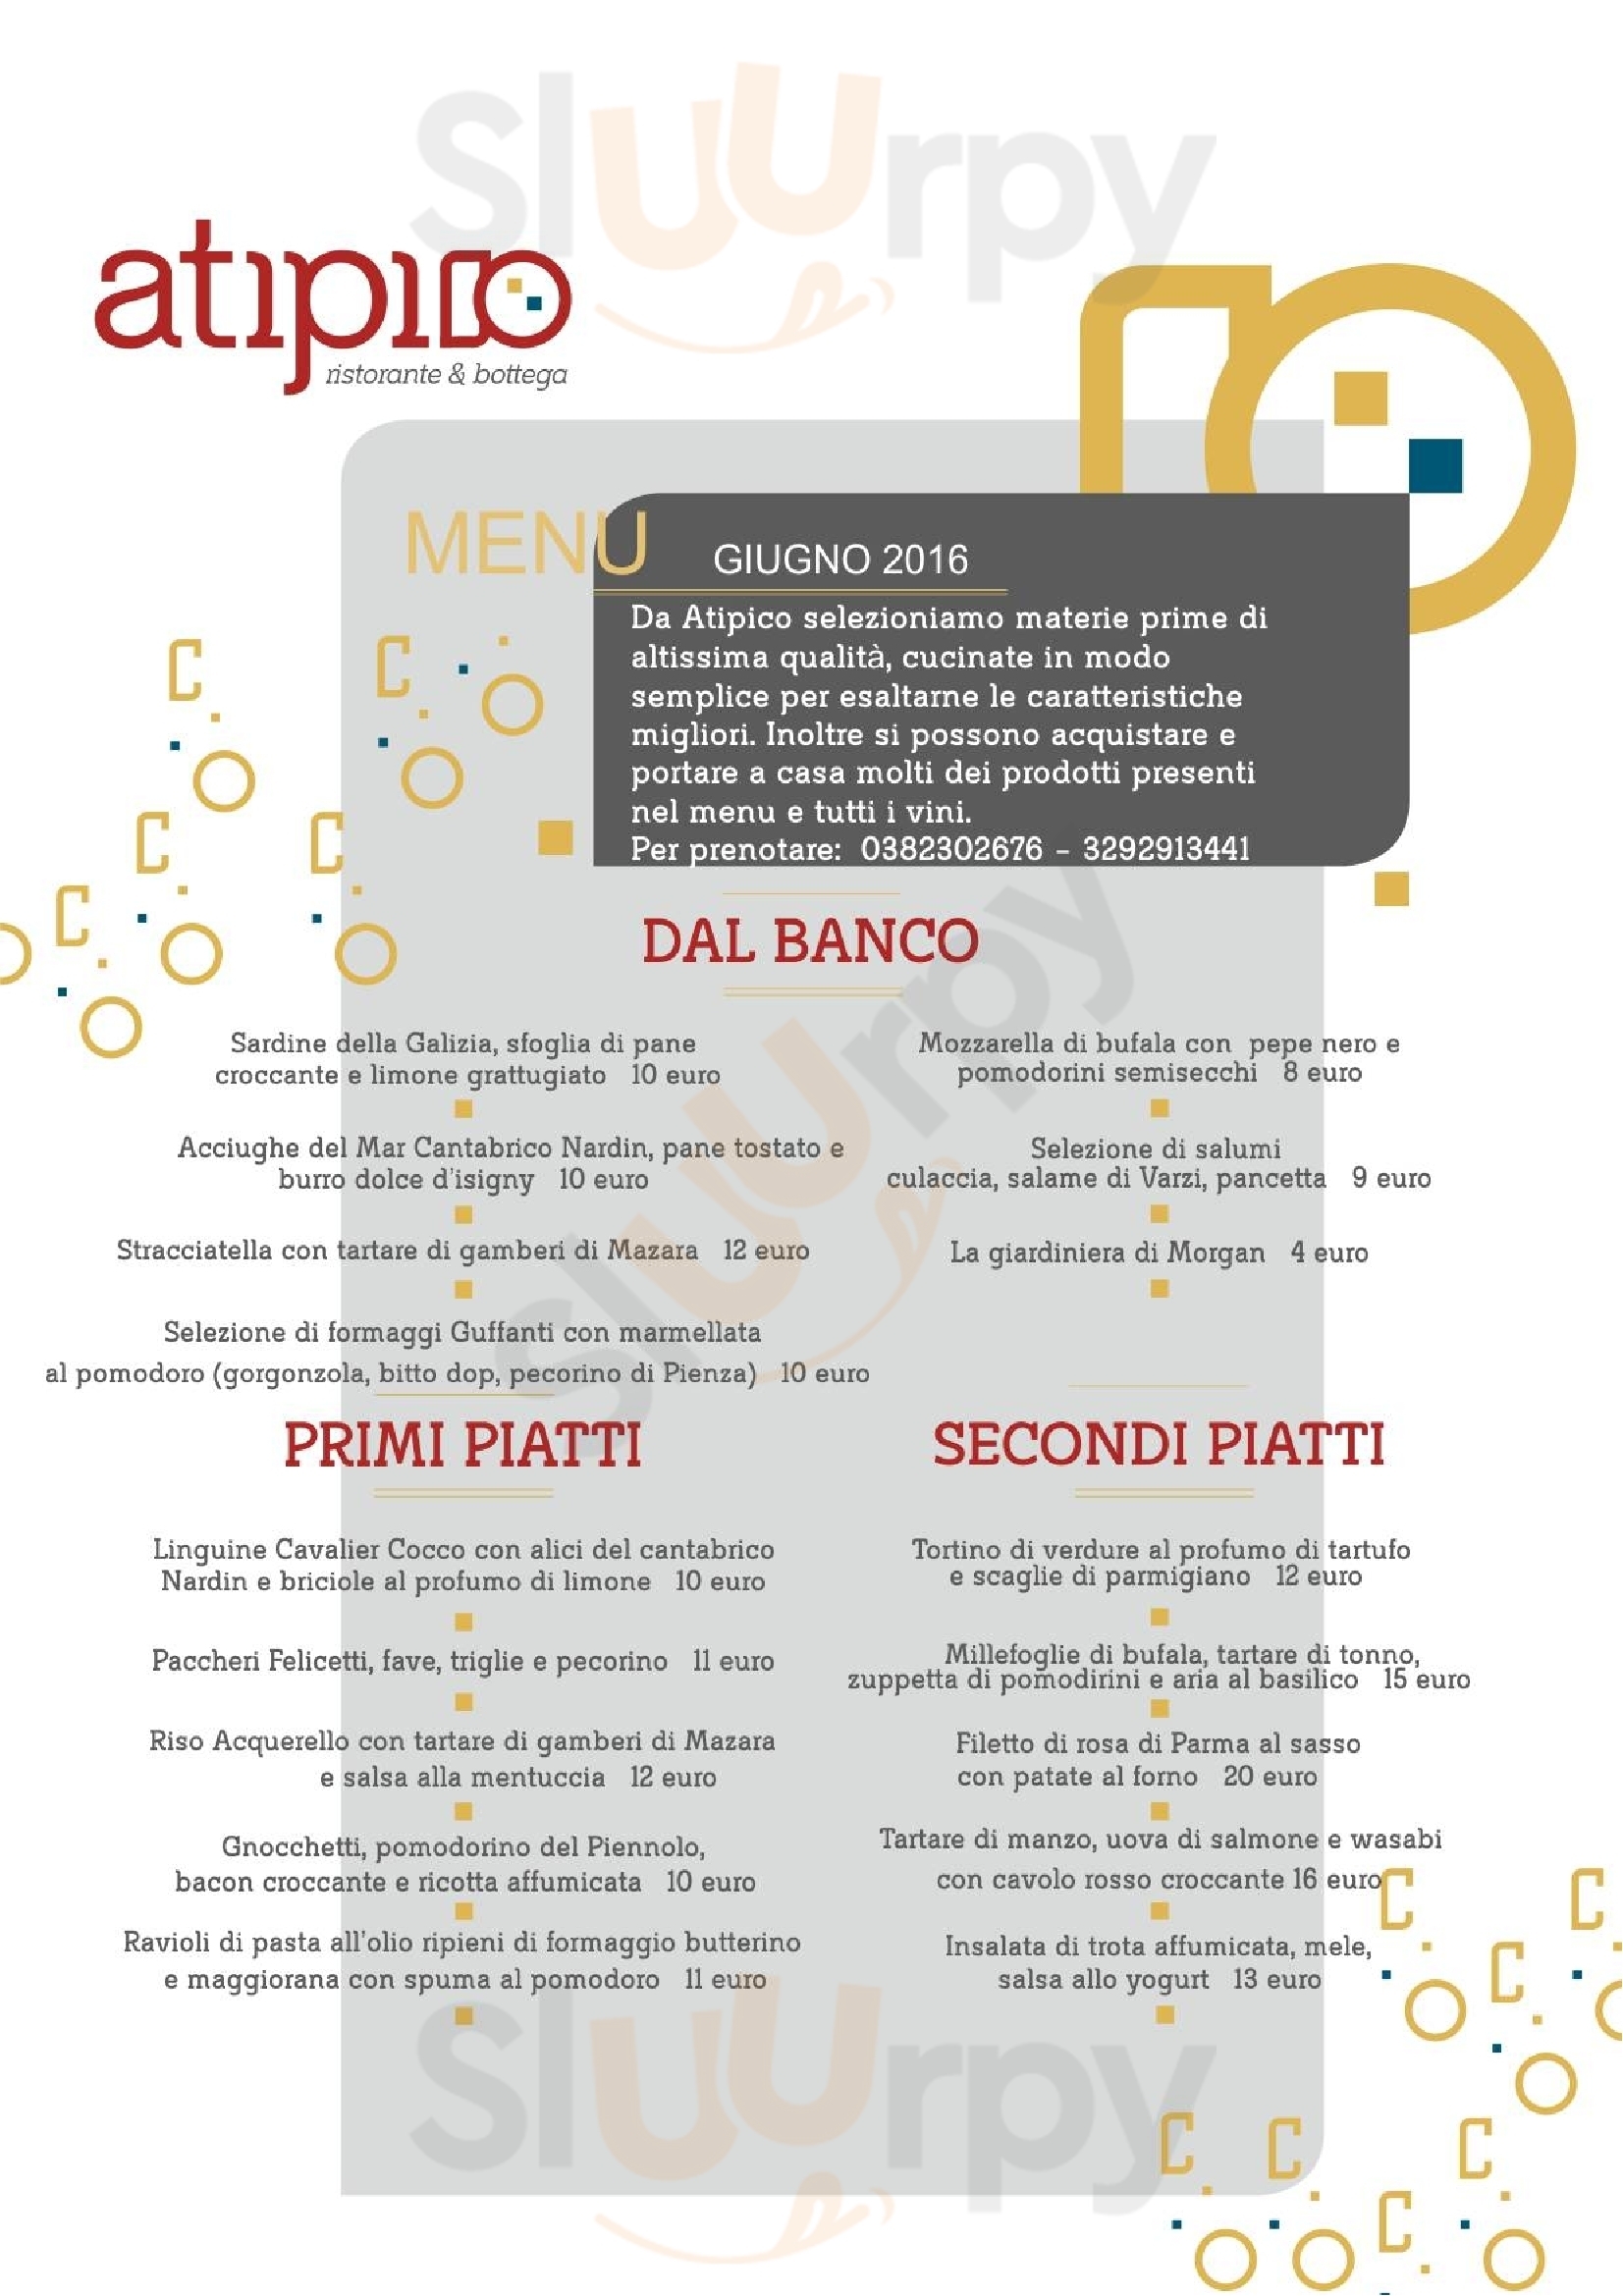 Atipico Ristorante & Bottega Pavia menù 1 pagina